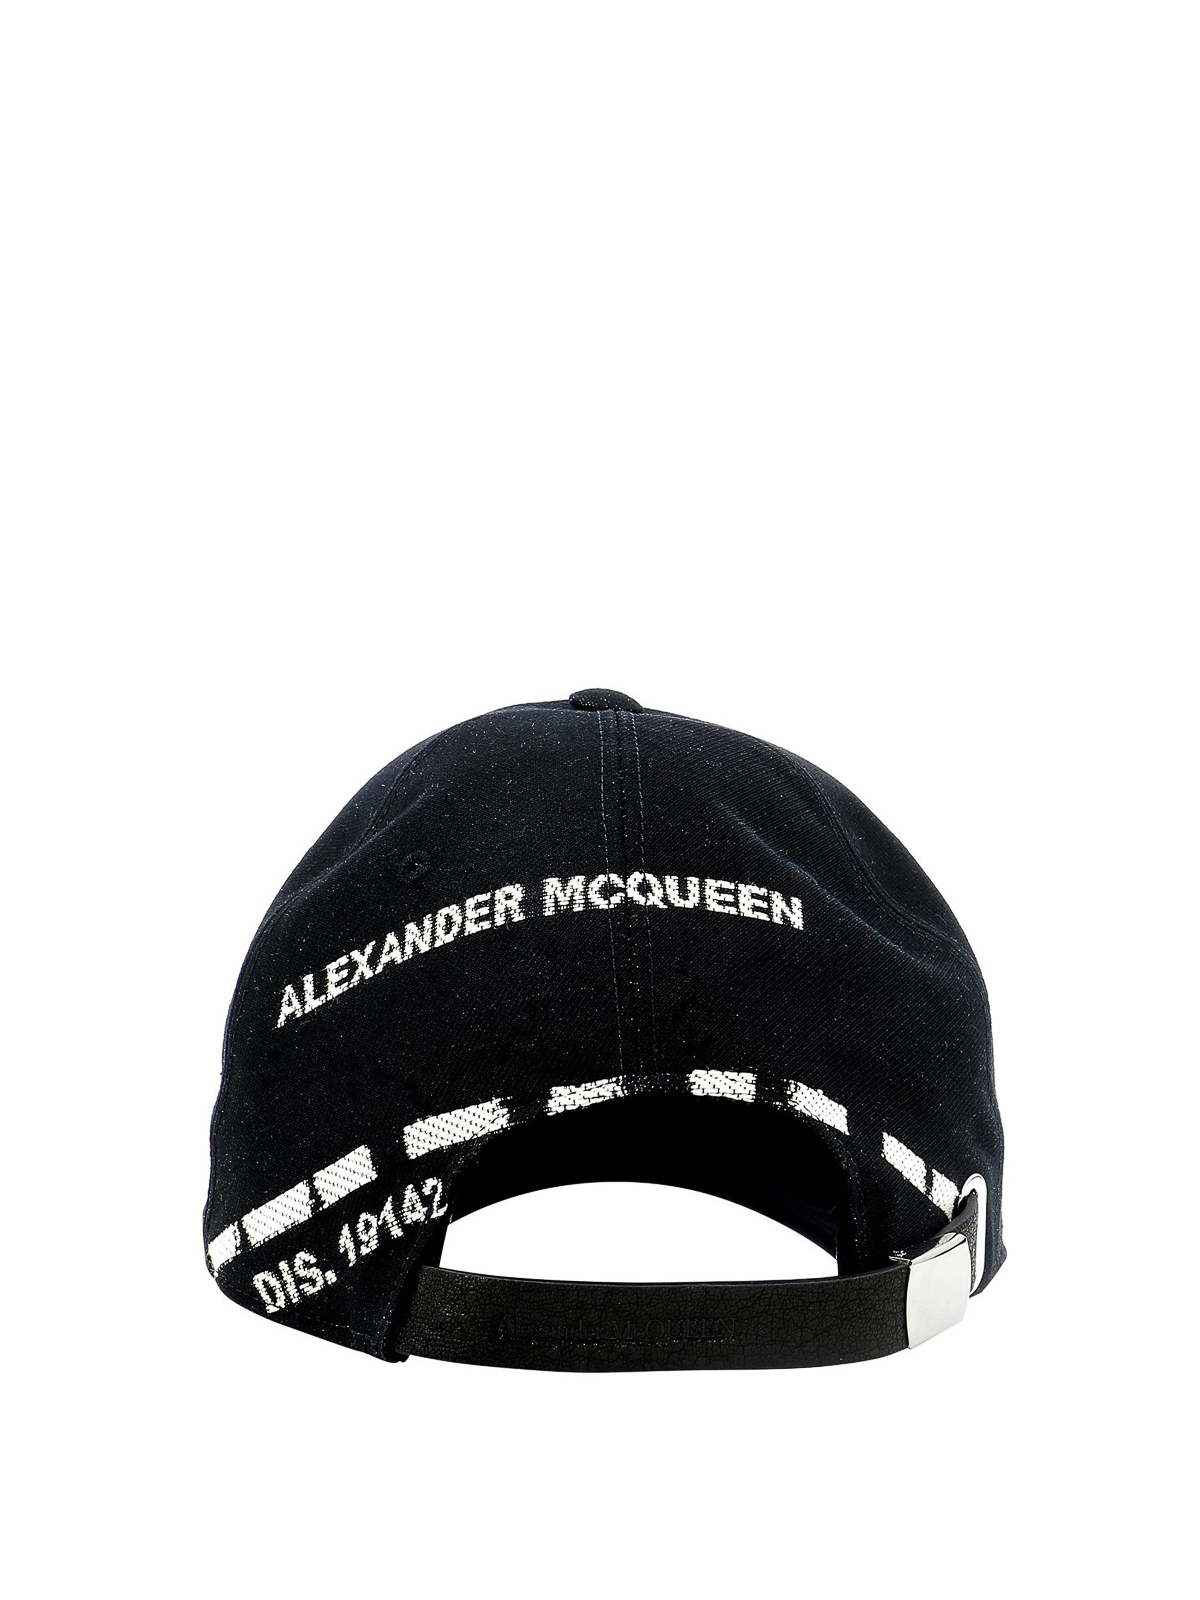 Hats caps Alexander Mcqueen - Graffiti-style print cap - 6243924C60Q1078